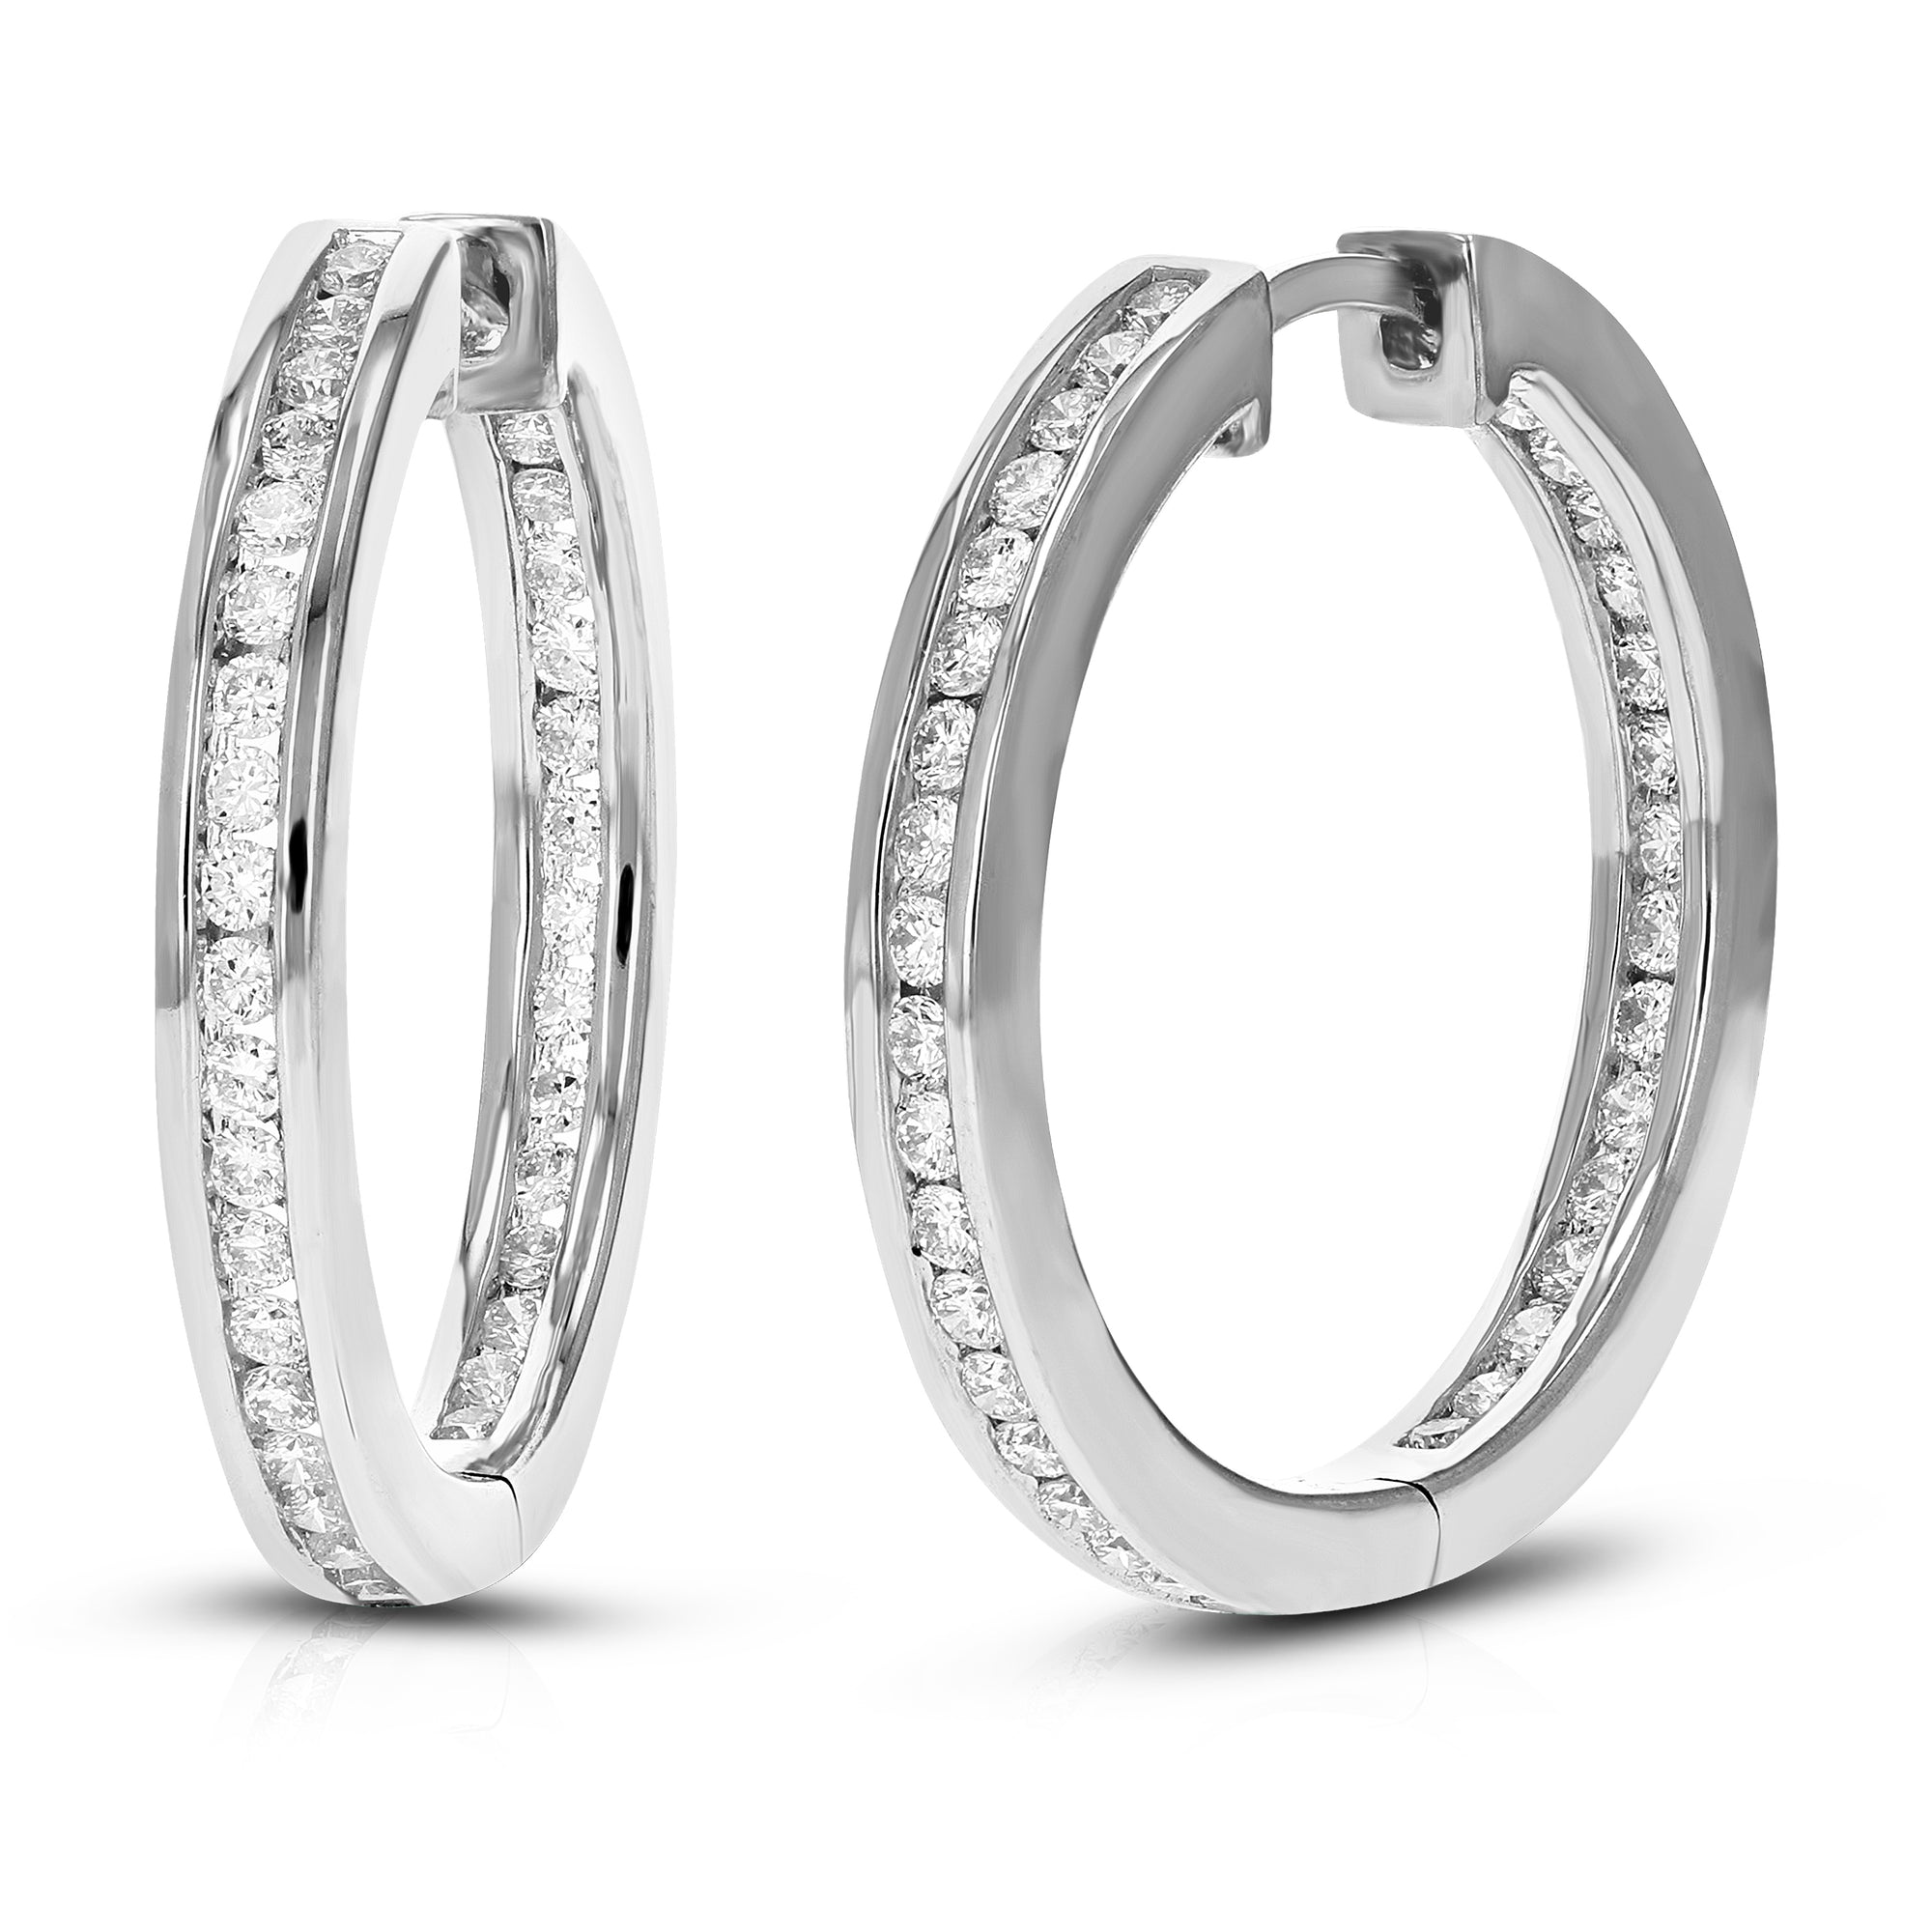 1 cttw Diamond Hoop Earrings for Women, Round Lab Grown Diamond Earrings in .925 Sterling Silver, Channel Setting, 1 Inch